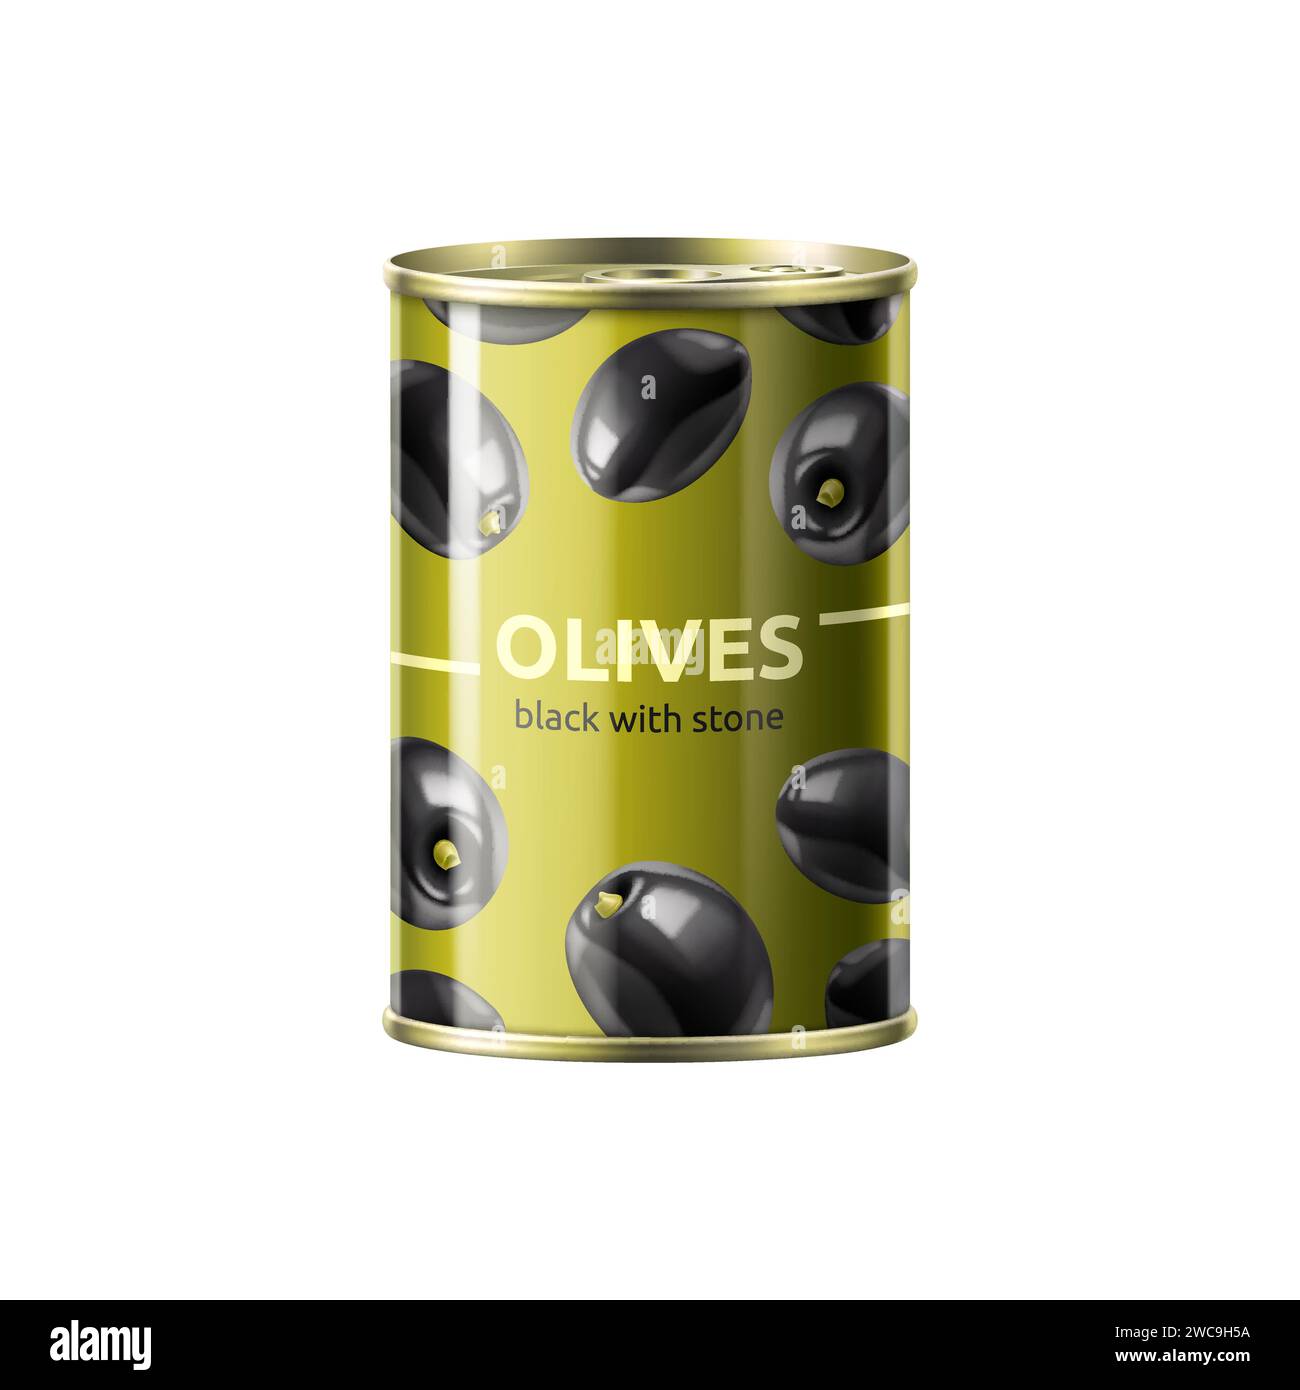 Boîte d'olive noire réaliste, boîte d'étain cylindrique de vecteur 3d isolée, logement dodue et baies salées. Le récipient métallique recèle des trésors méditerranéens à l'intérieur, pour ajouter une bouffée de saveur aux plats Illustration de Vecteur